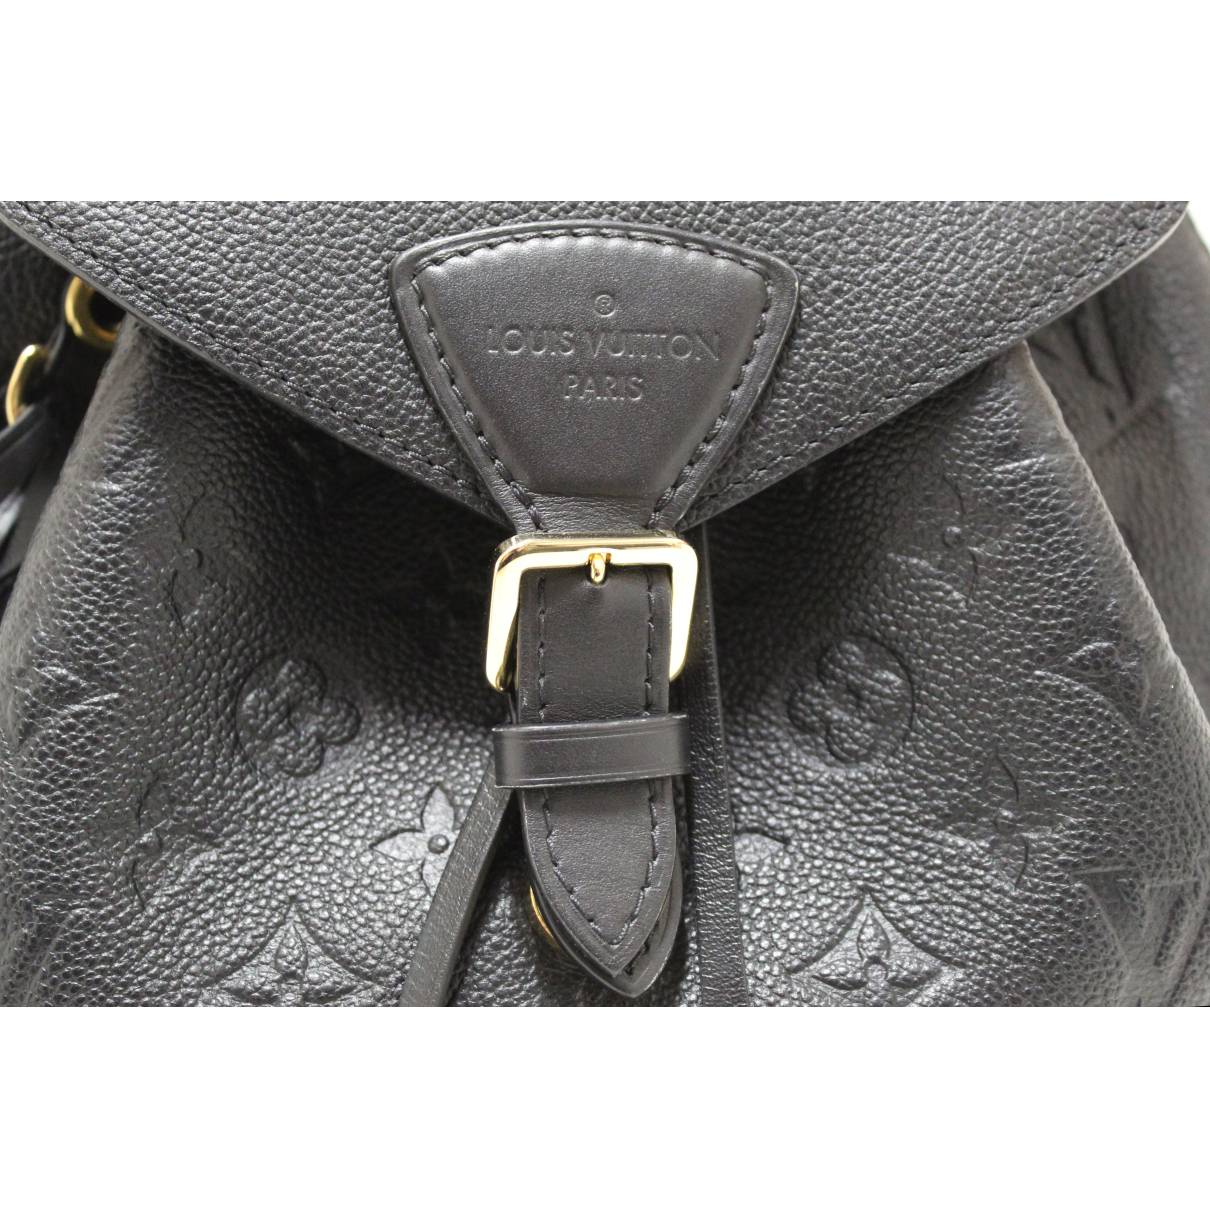 Louis Vuitton Montsouris Empreinte Leather Backpack Bag